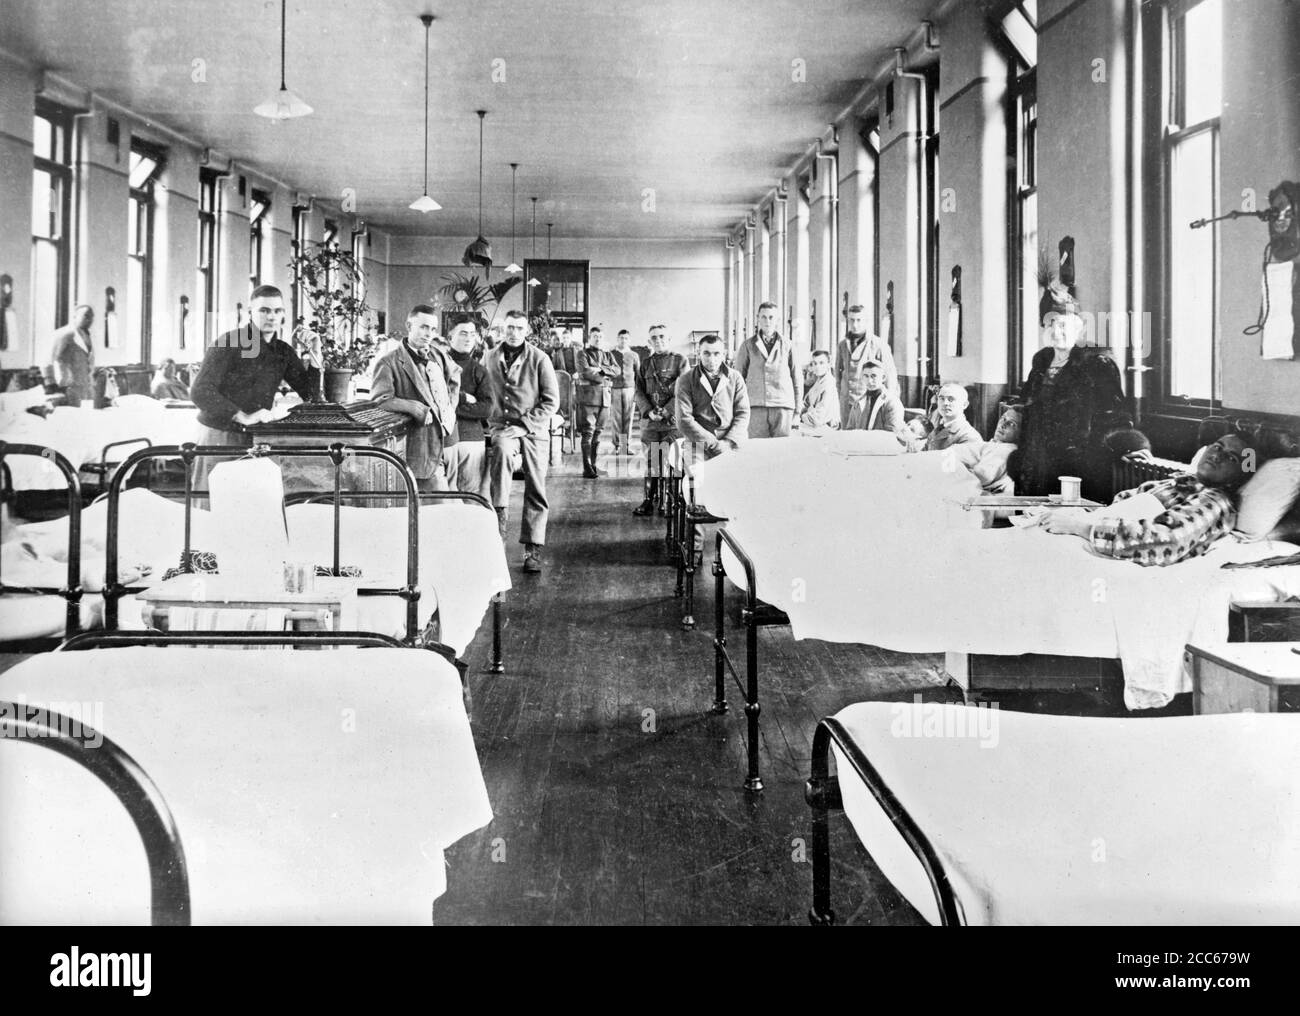 Grippe espagnole 1918. Des militaires américains dans un service de grippe au quatrième hôpital général écossais de Glasgow pendant la pandémie de grippe espagnole de 1918. Photographie prise en novembre 1918 Banque D'Images